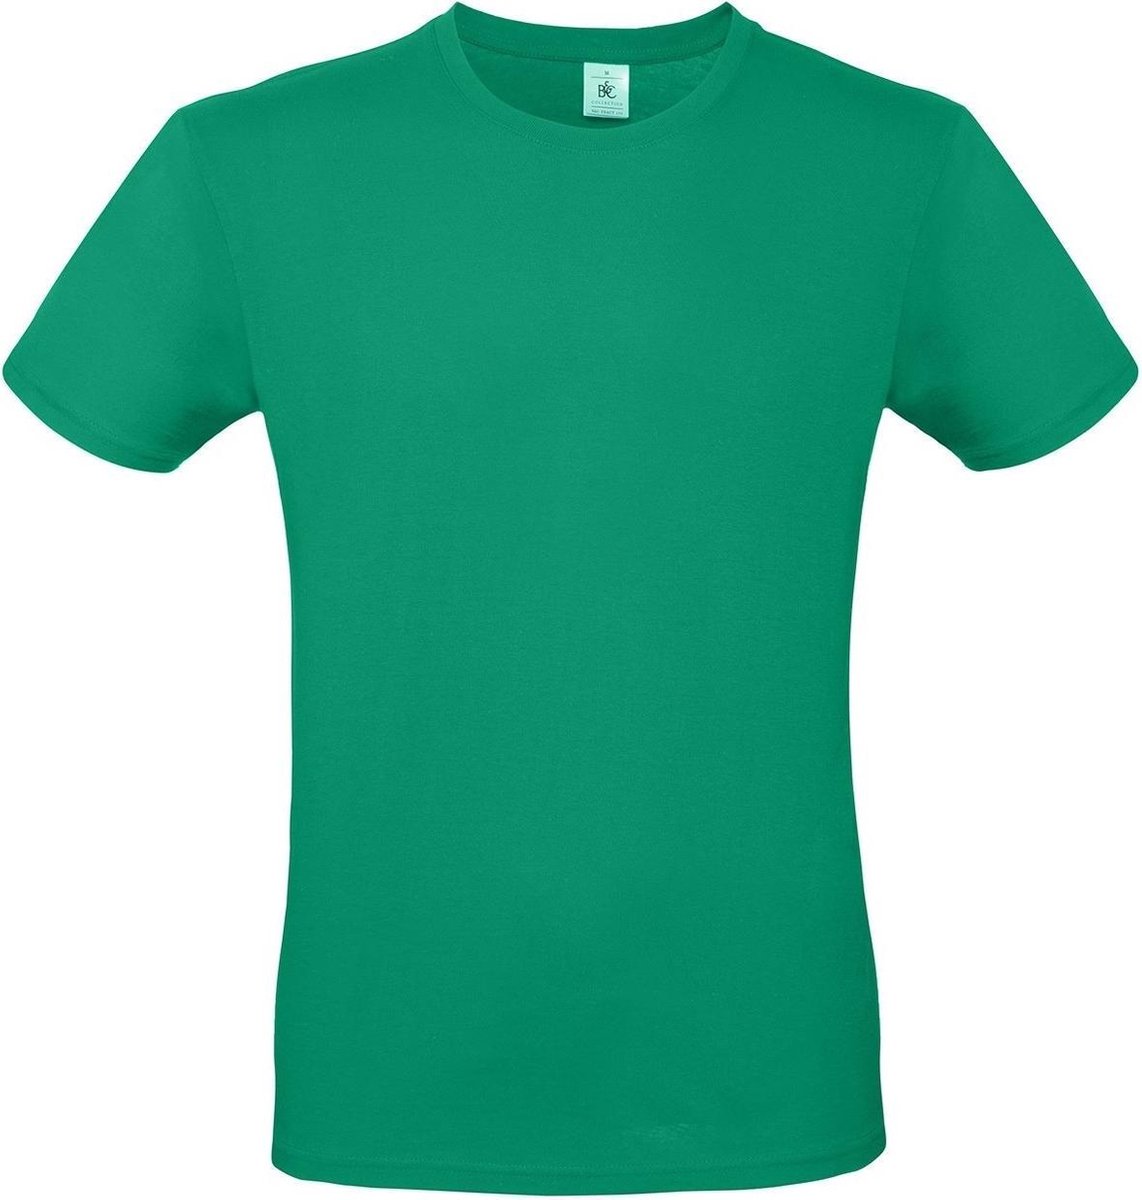 Set van 3x stuks groen basic t-shirt met ronde hals voor heren - katoen - 145 grams - groene shirts / kleding, maat: S (48)